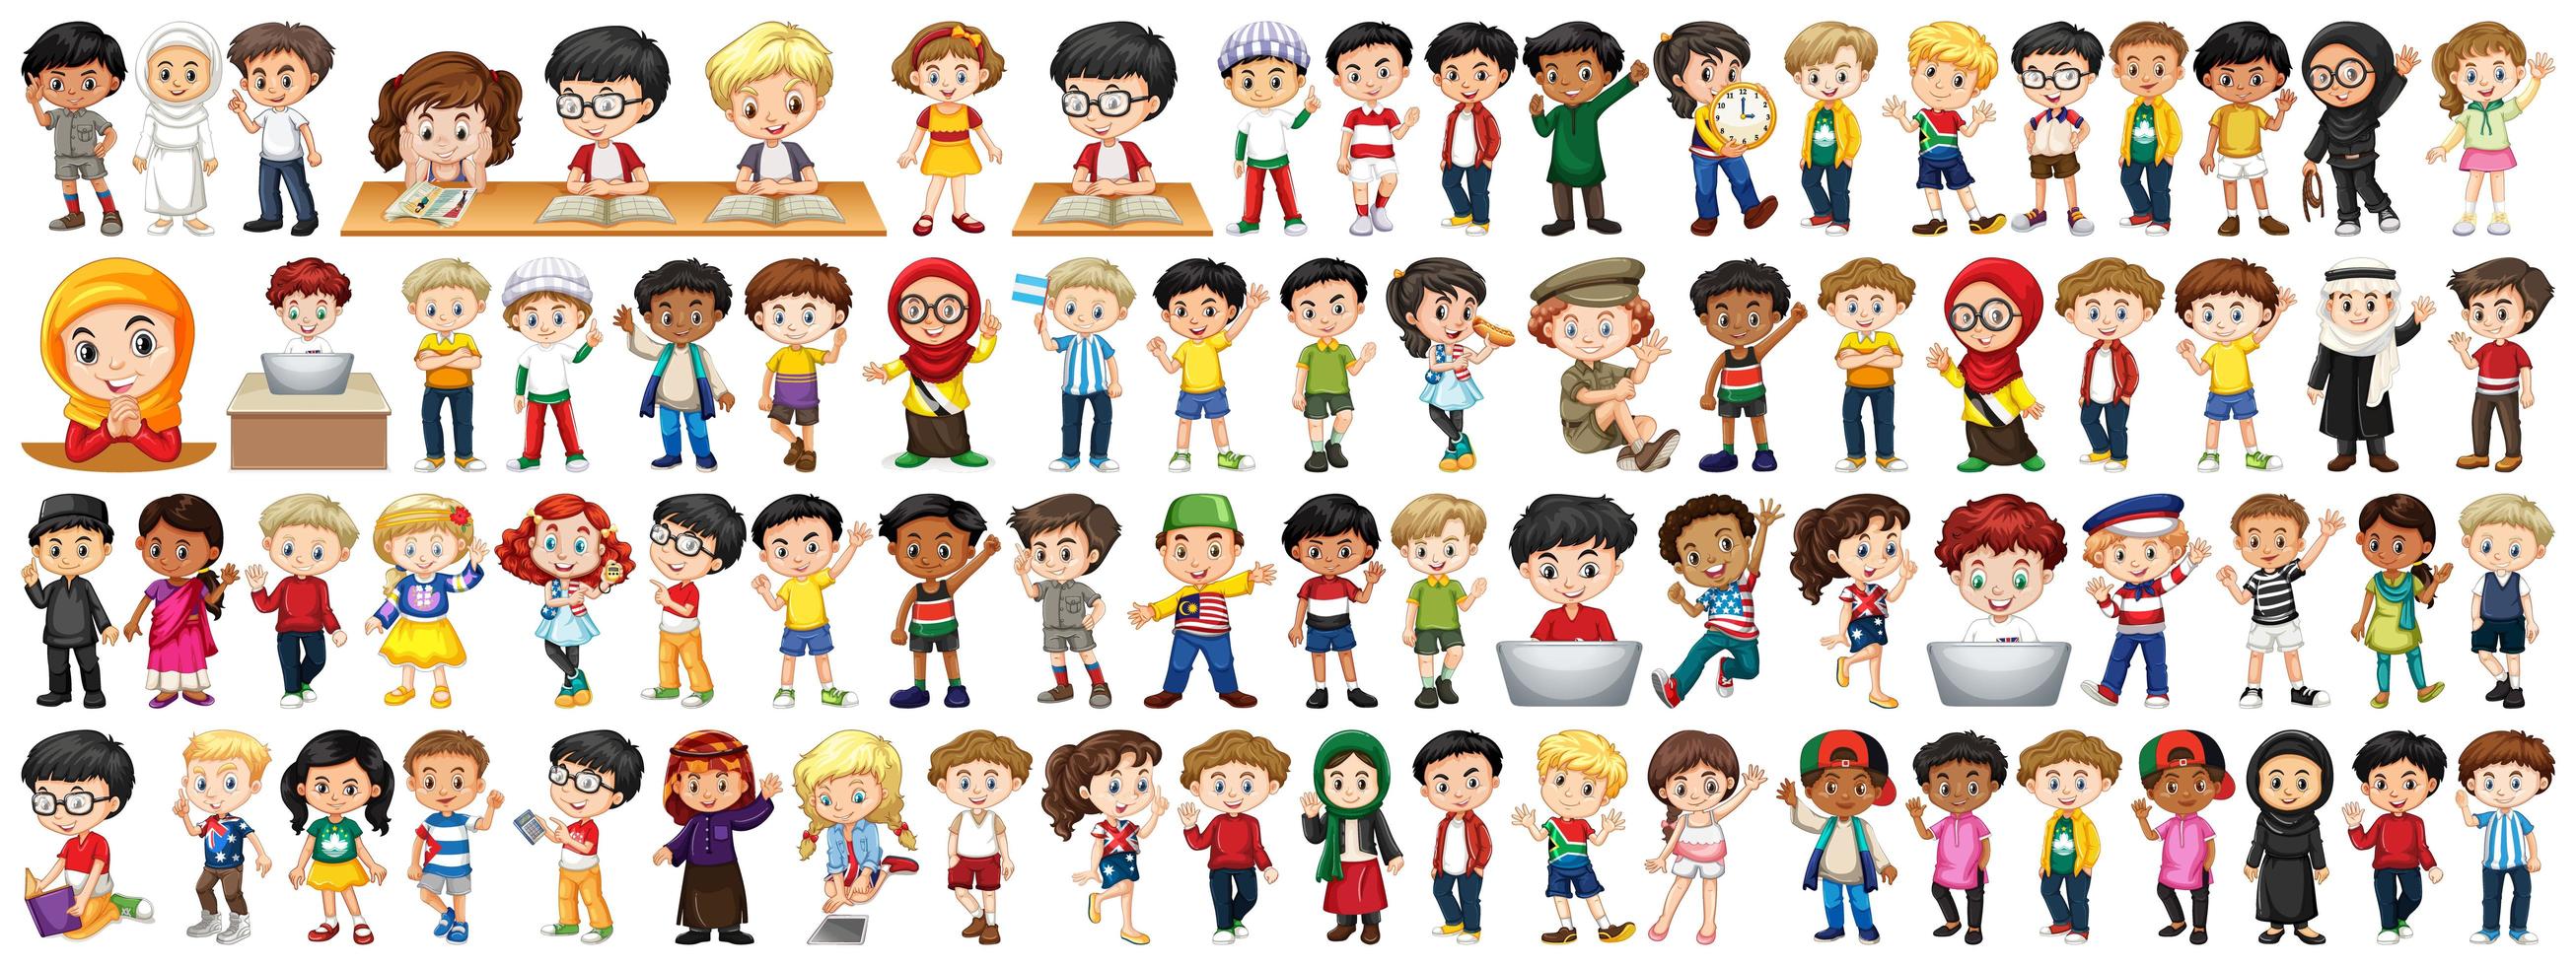 bambini di varie nazionalità su sfondo bianco vettore